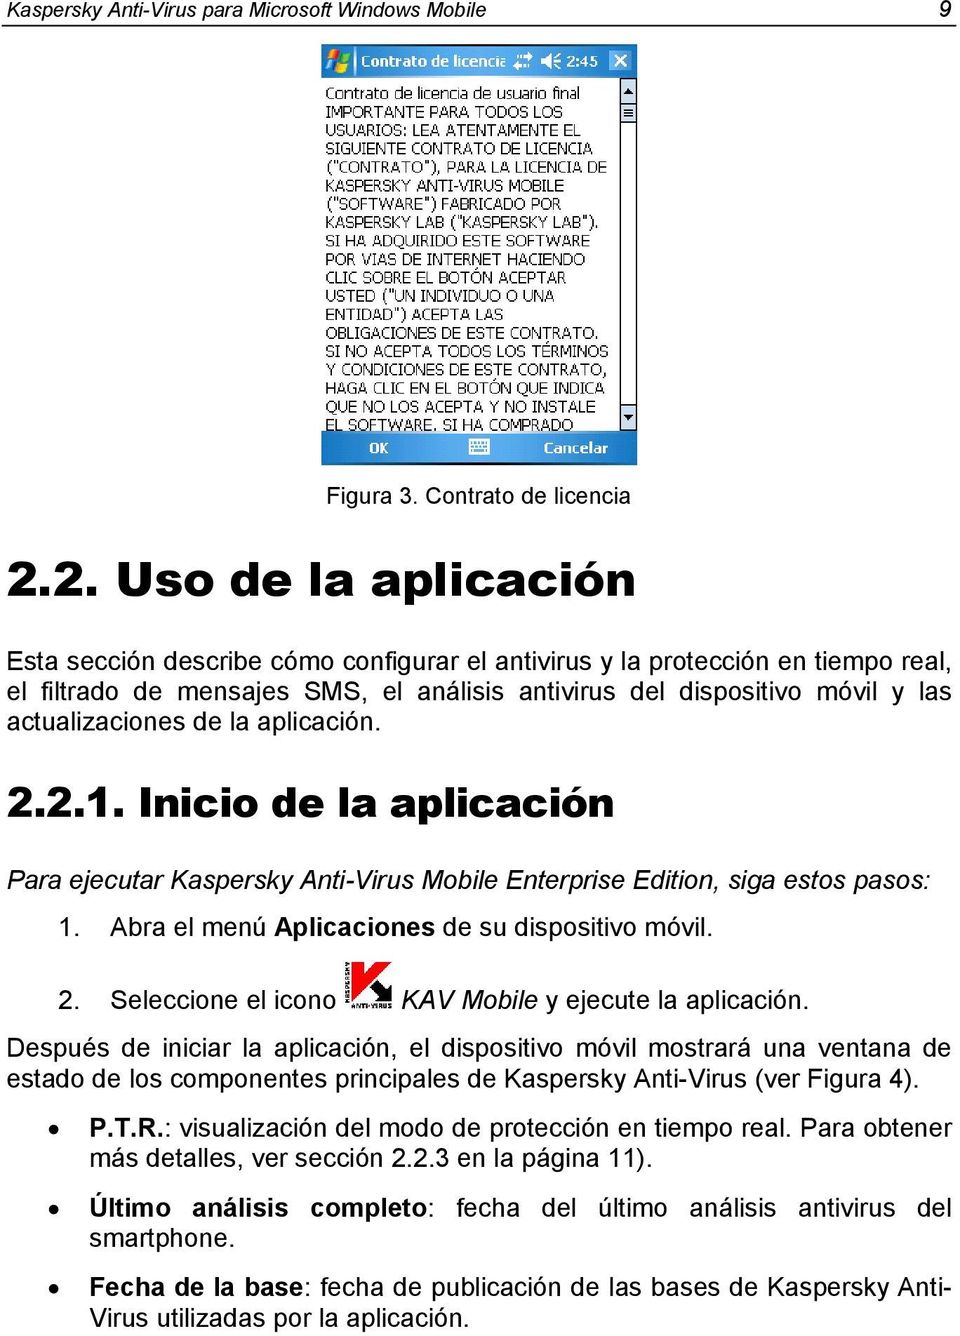 actualizaciones de la aplicación. 2.2.1. Inicio de la aplicación Para ejecutar Kaspersky Anti-Virus Mobile Enterprise Edition, siga estos pasos: 1. Abra el menú Aplicaciones de su dispositivo móvil.